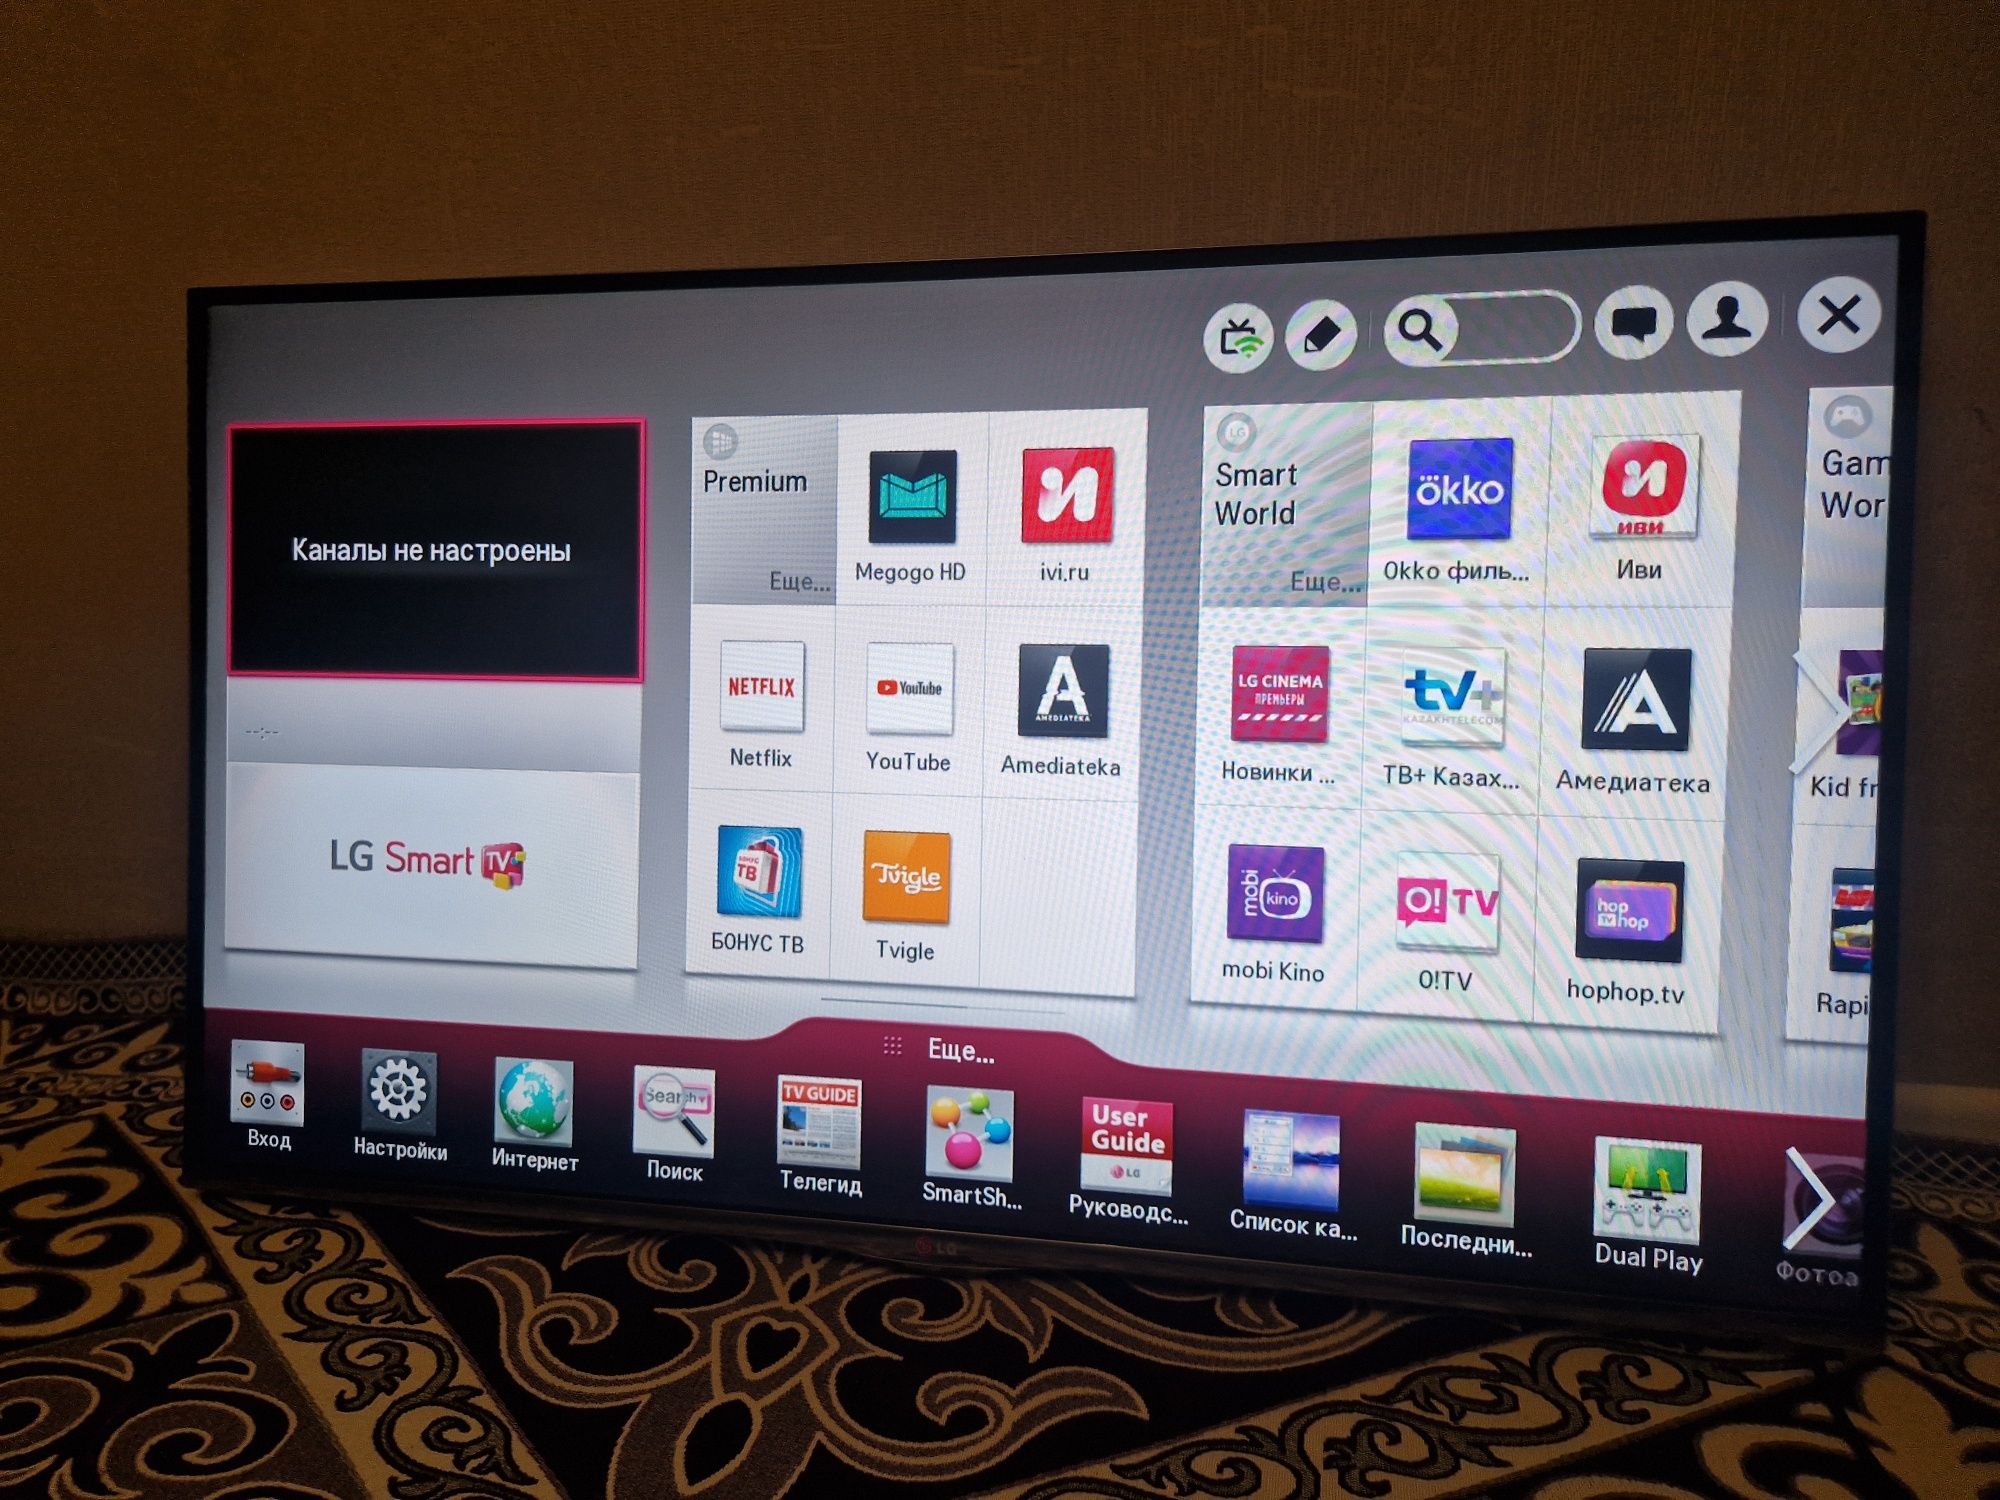 LG Smart Tv 47дюйма(120см) в идеальном состоянии / BTV  !!!